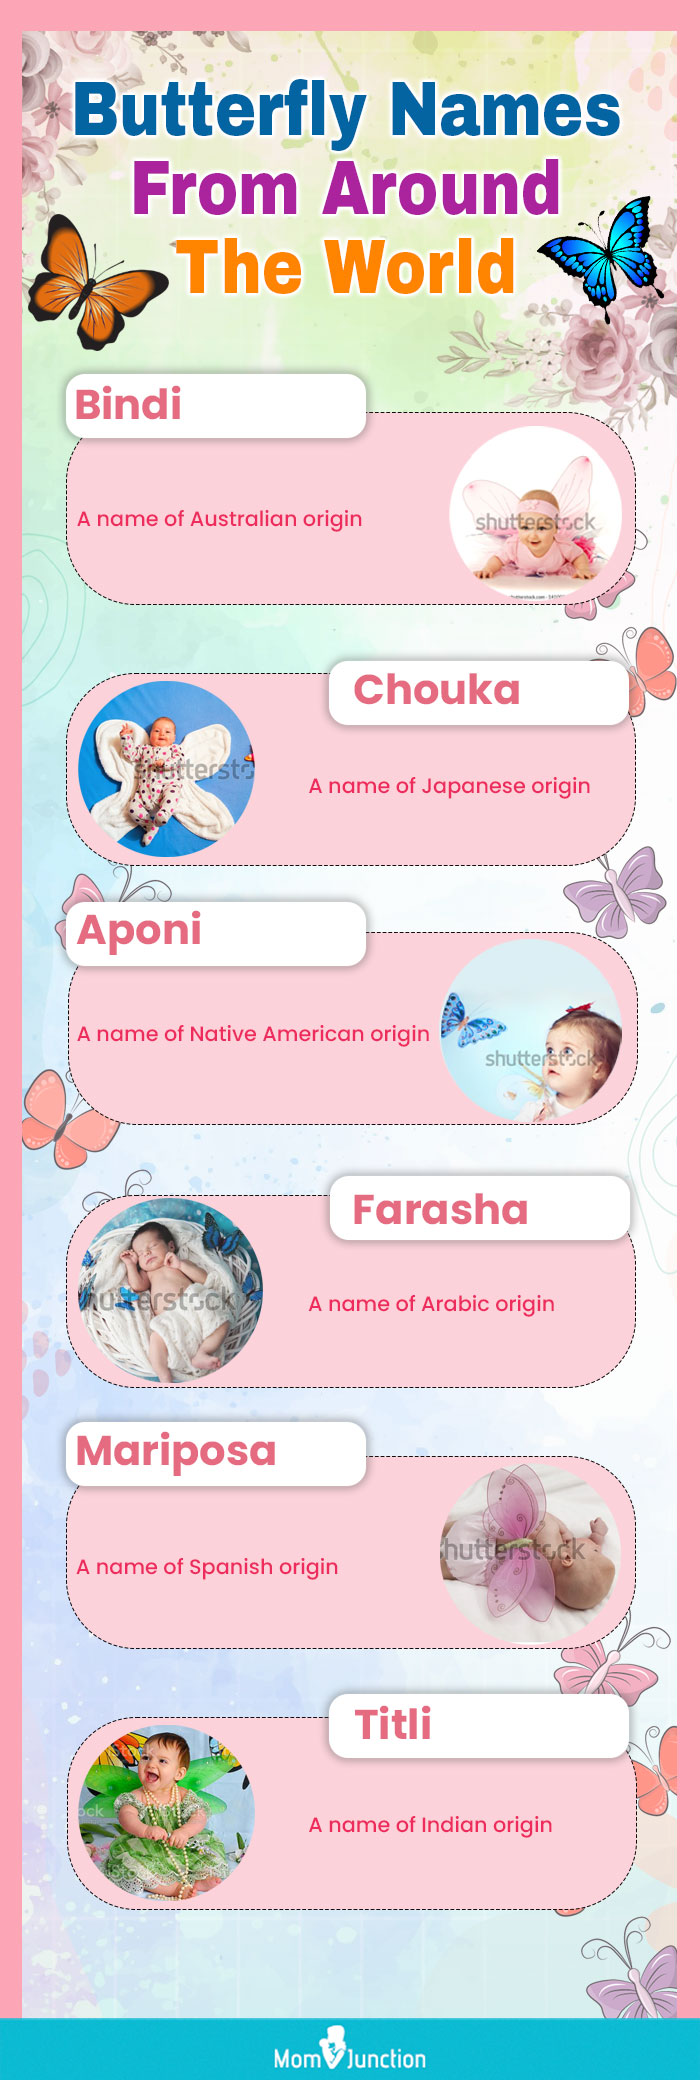 Bindi Baby Animals (Punjabi): A Beginner Language Book for Punjabi Children